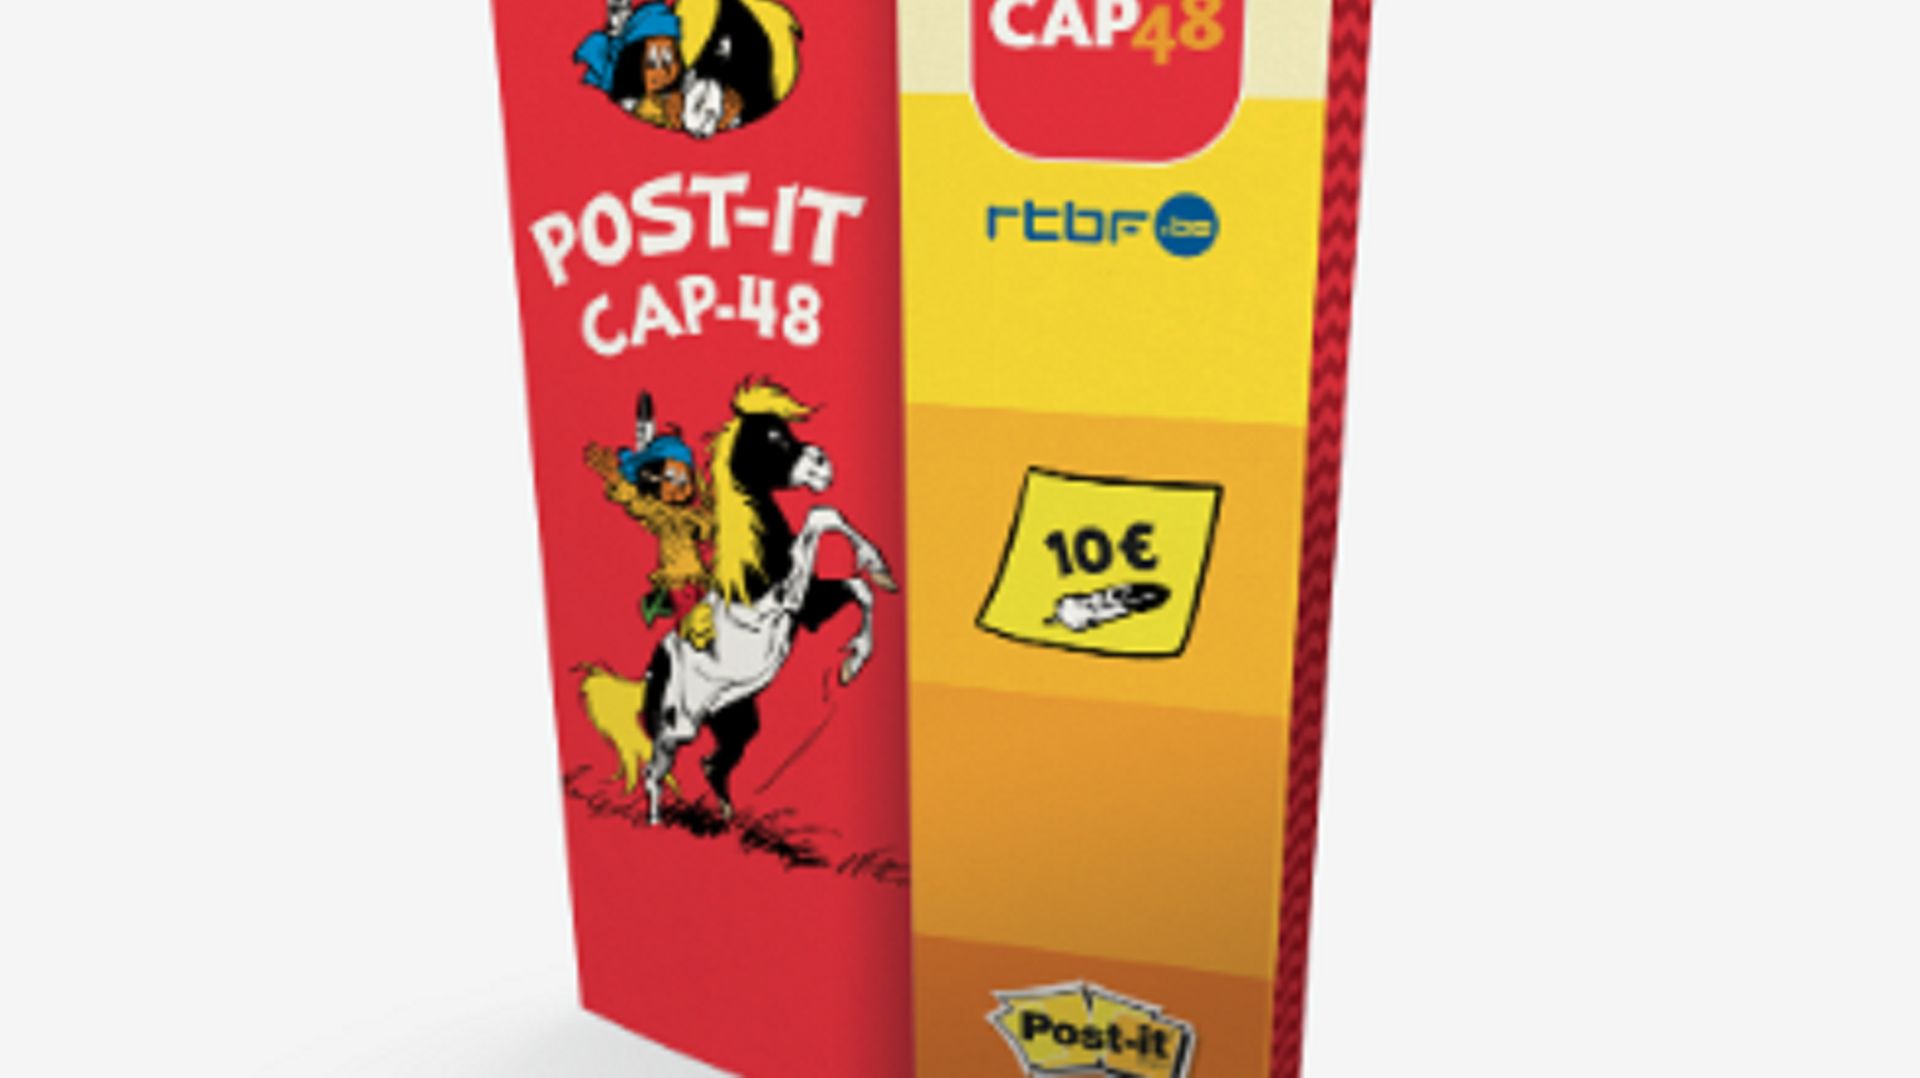 Vous avez jusqu'au 10 octobre pour acheter les Post-it CAP48 ! 